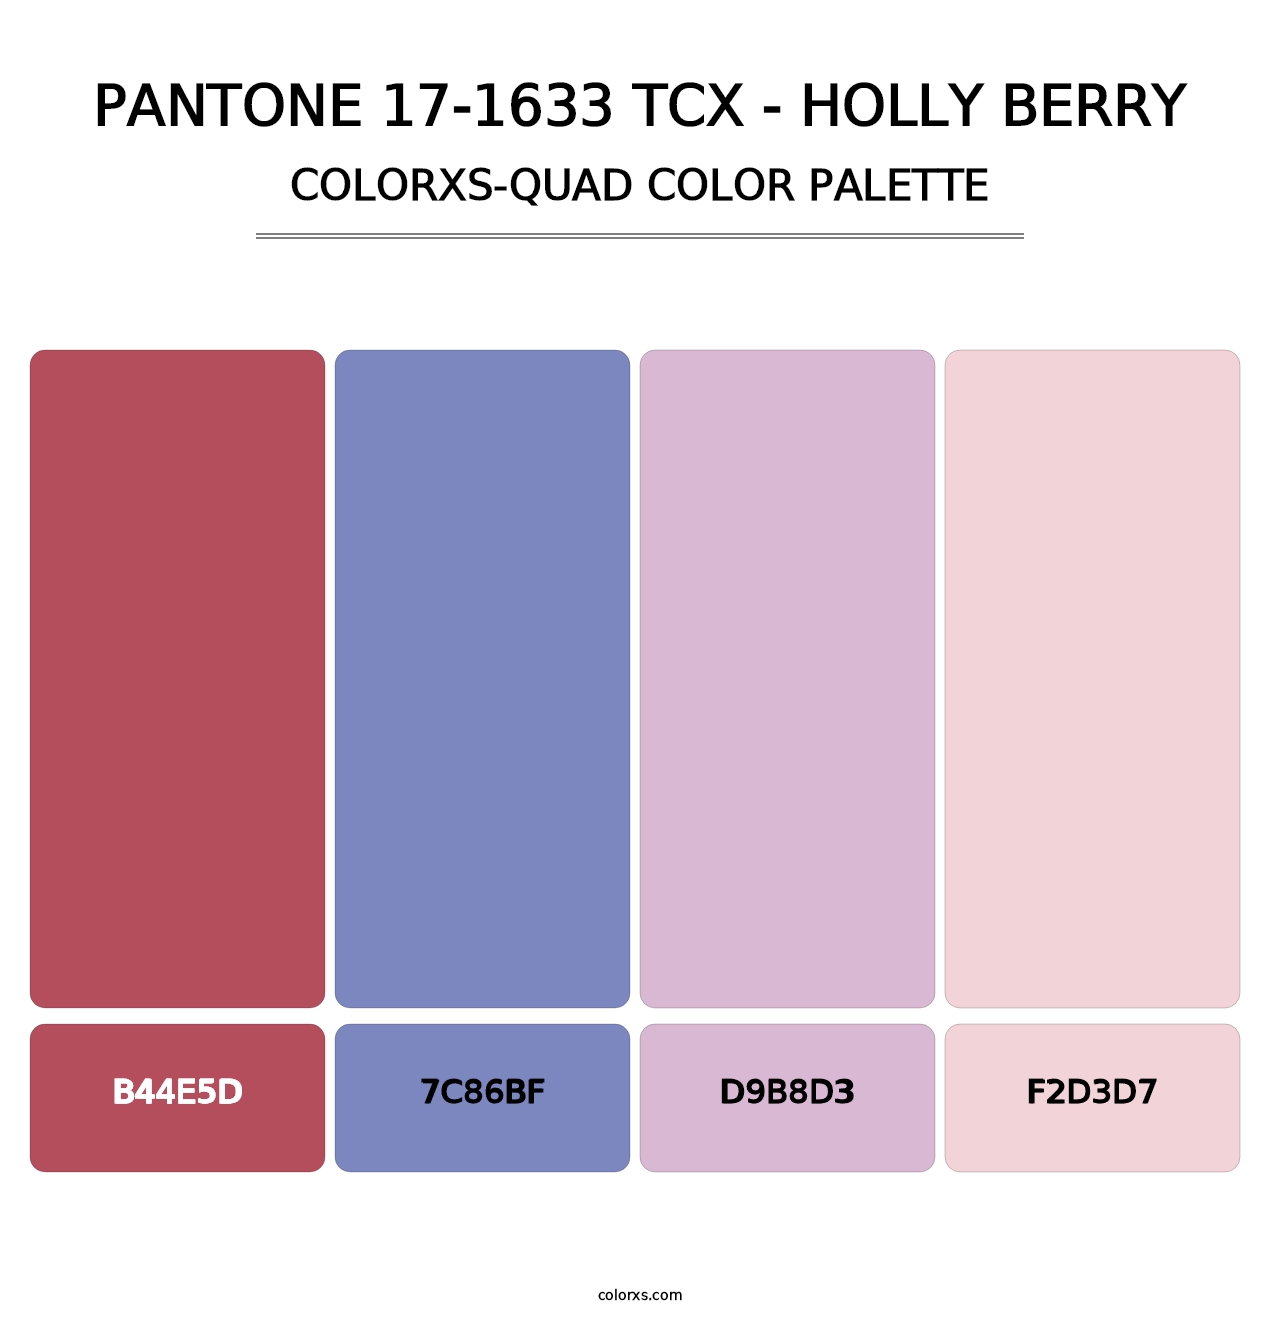 PANTONE 17-1633 TCX - Holly Berry - Colorxs Quad Palette